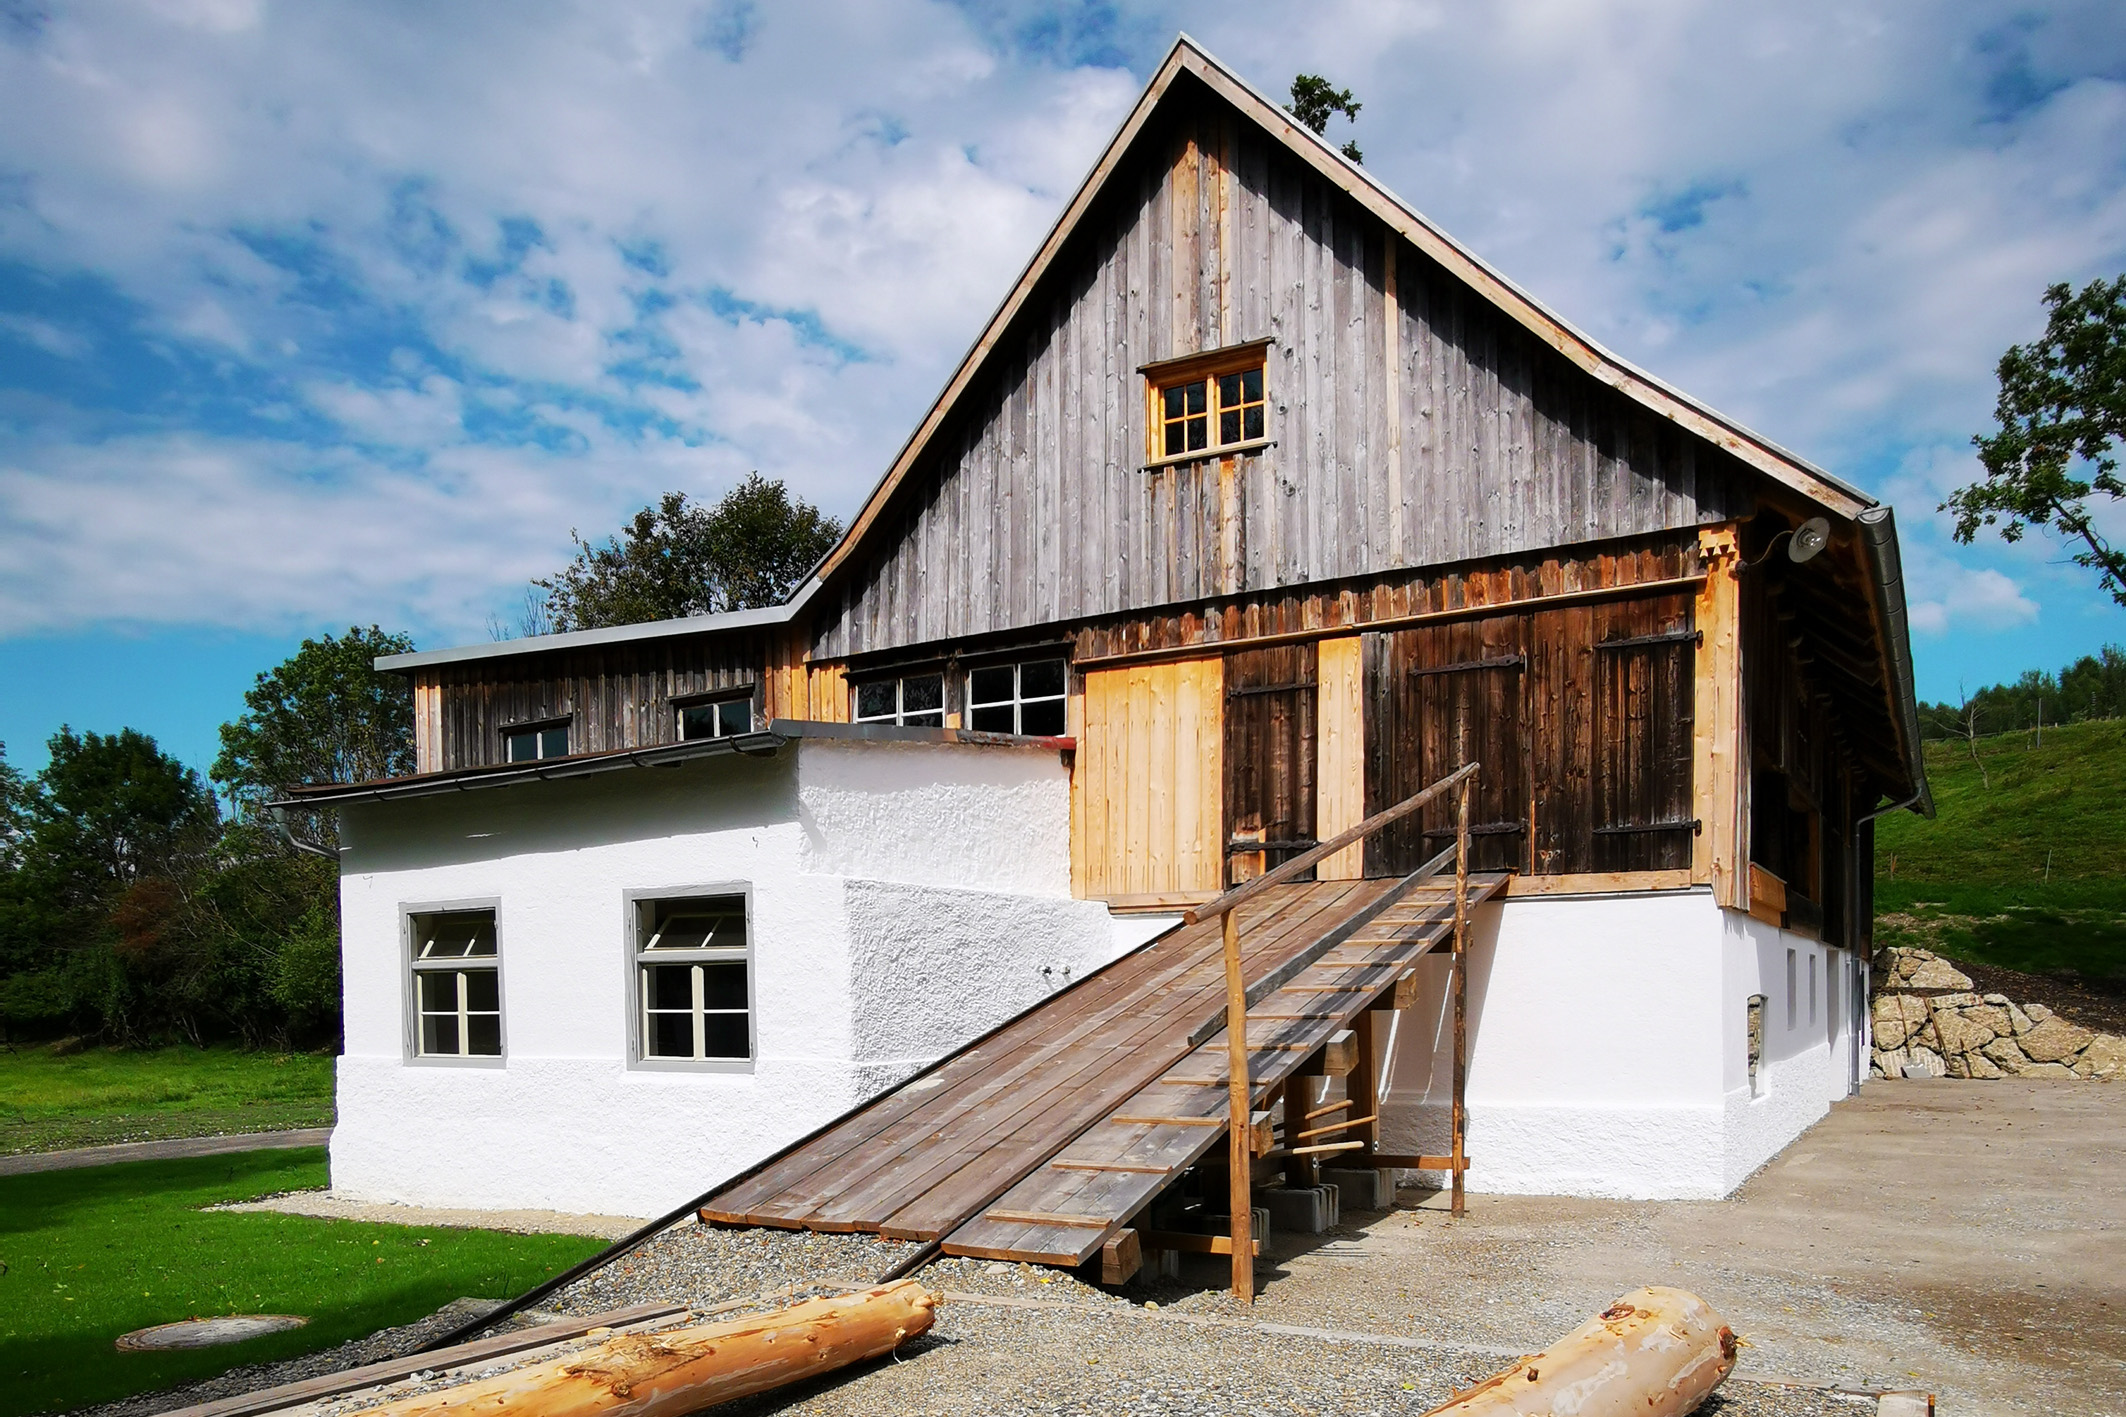 Geschichte live: Fast 200 Jahre alte Säge neu im Bauernhofmuseum - Jetzt eine weitere Attraktion für Besucher geöffnet